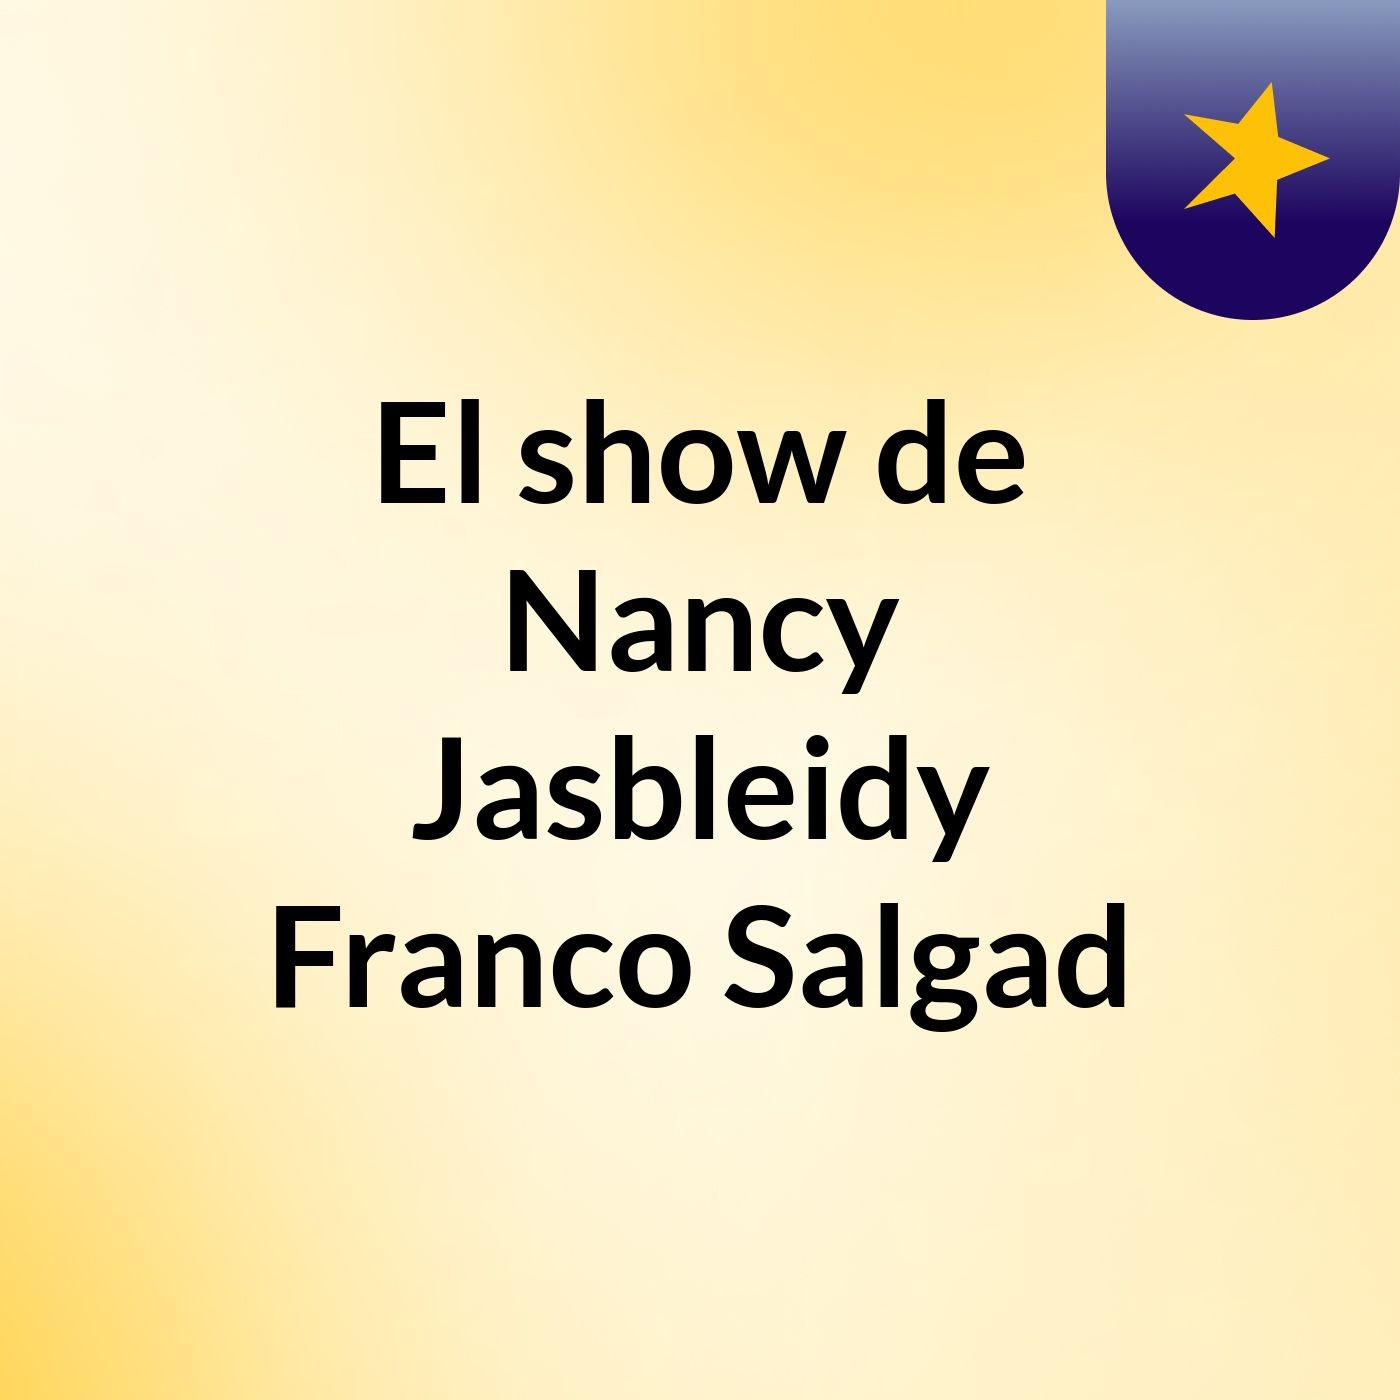 Episodio 2 - El show de Nancy Jasbleidy Franco Salgad